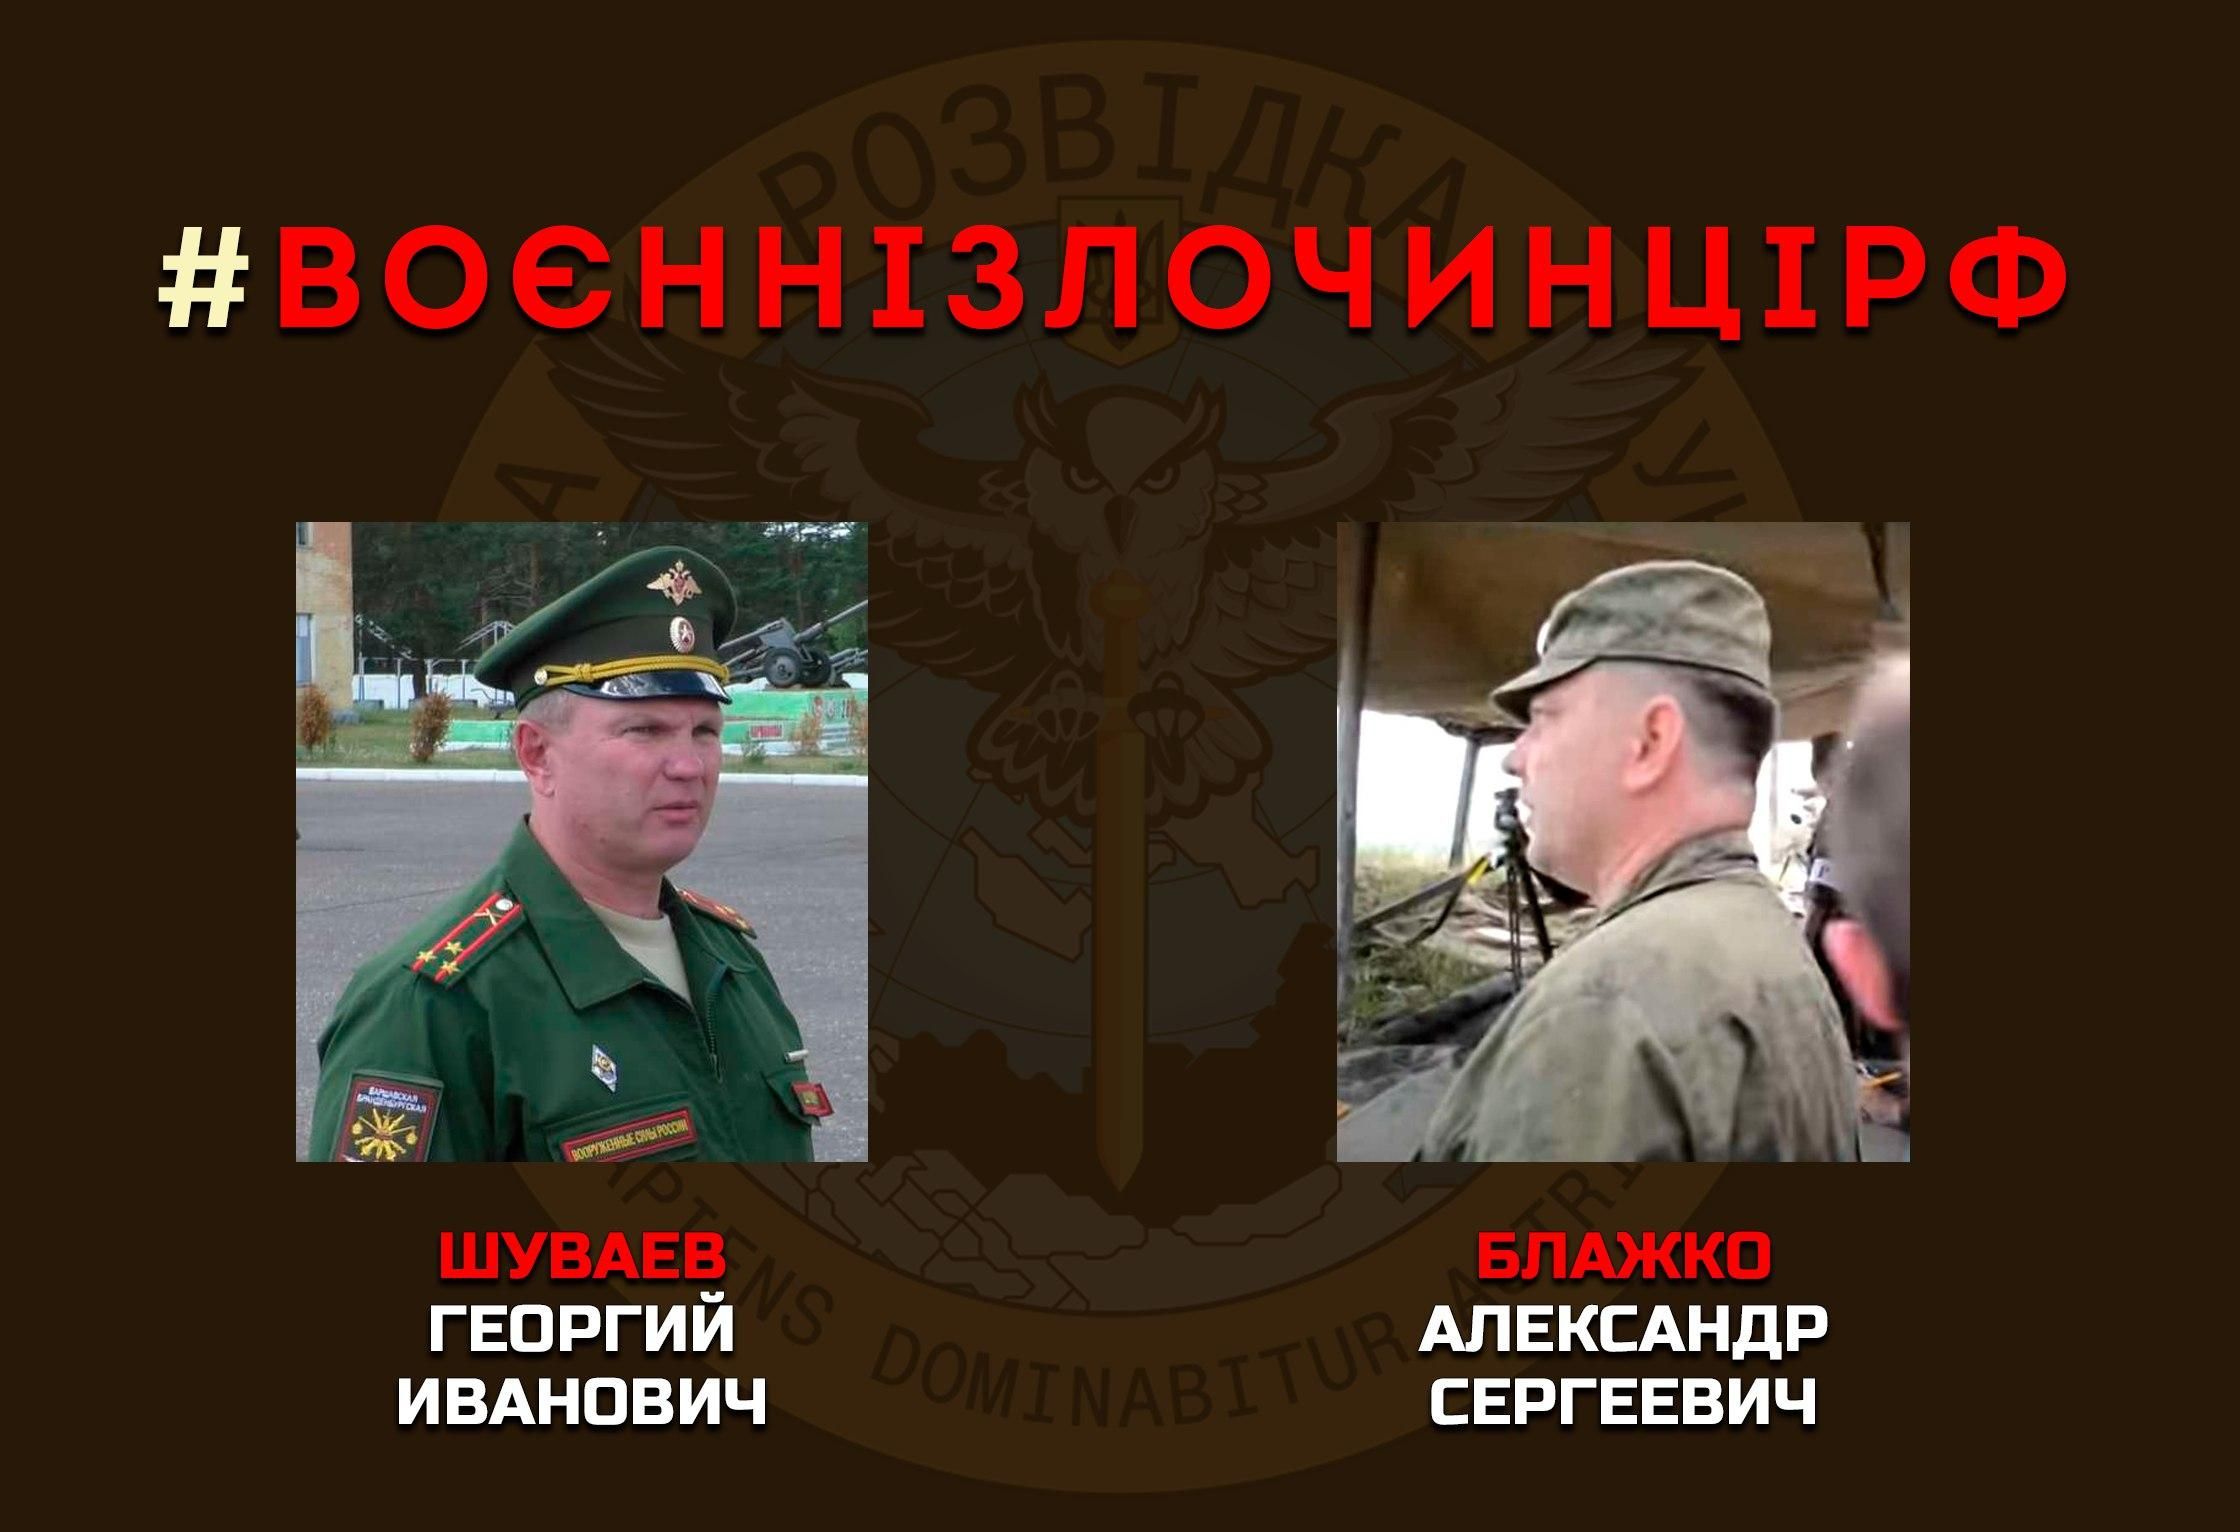 Разведка обнародовала данные российских военных преступников из высшего командного состава